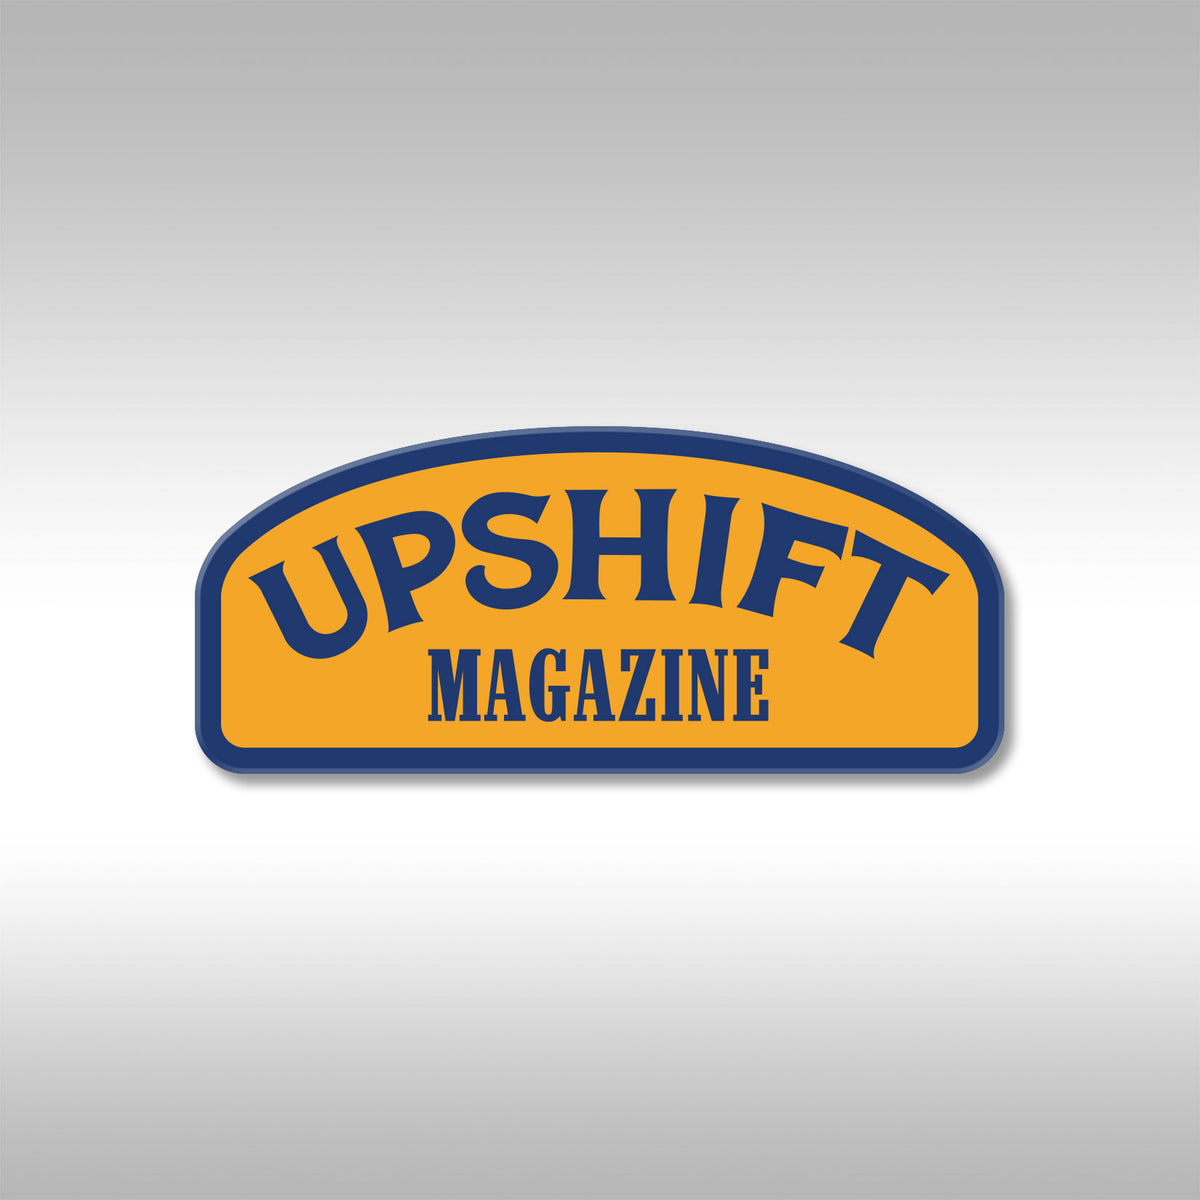 UPSHIFT MAGAZINE TROPHY STICKER - HEAVY DUTY